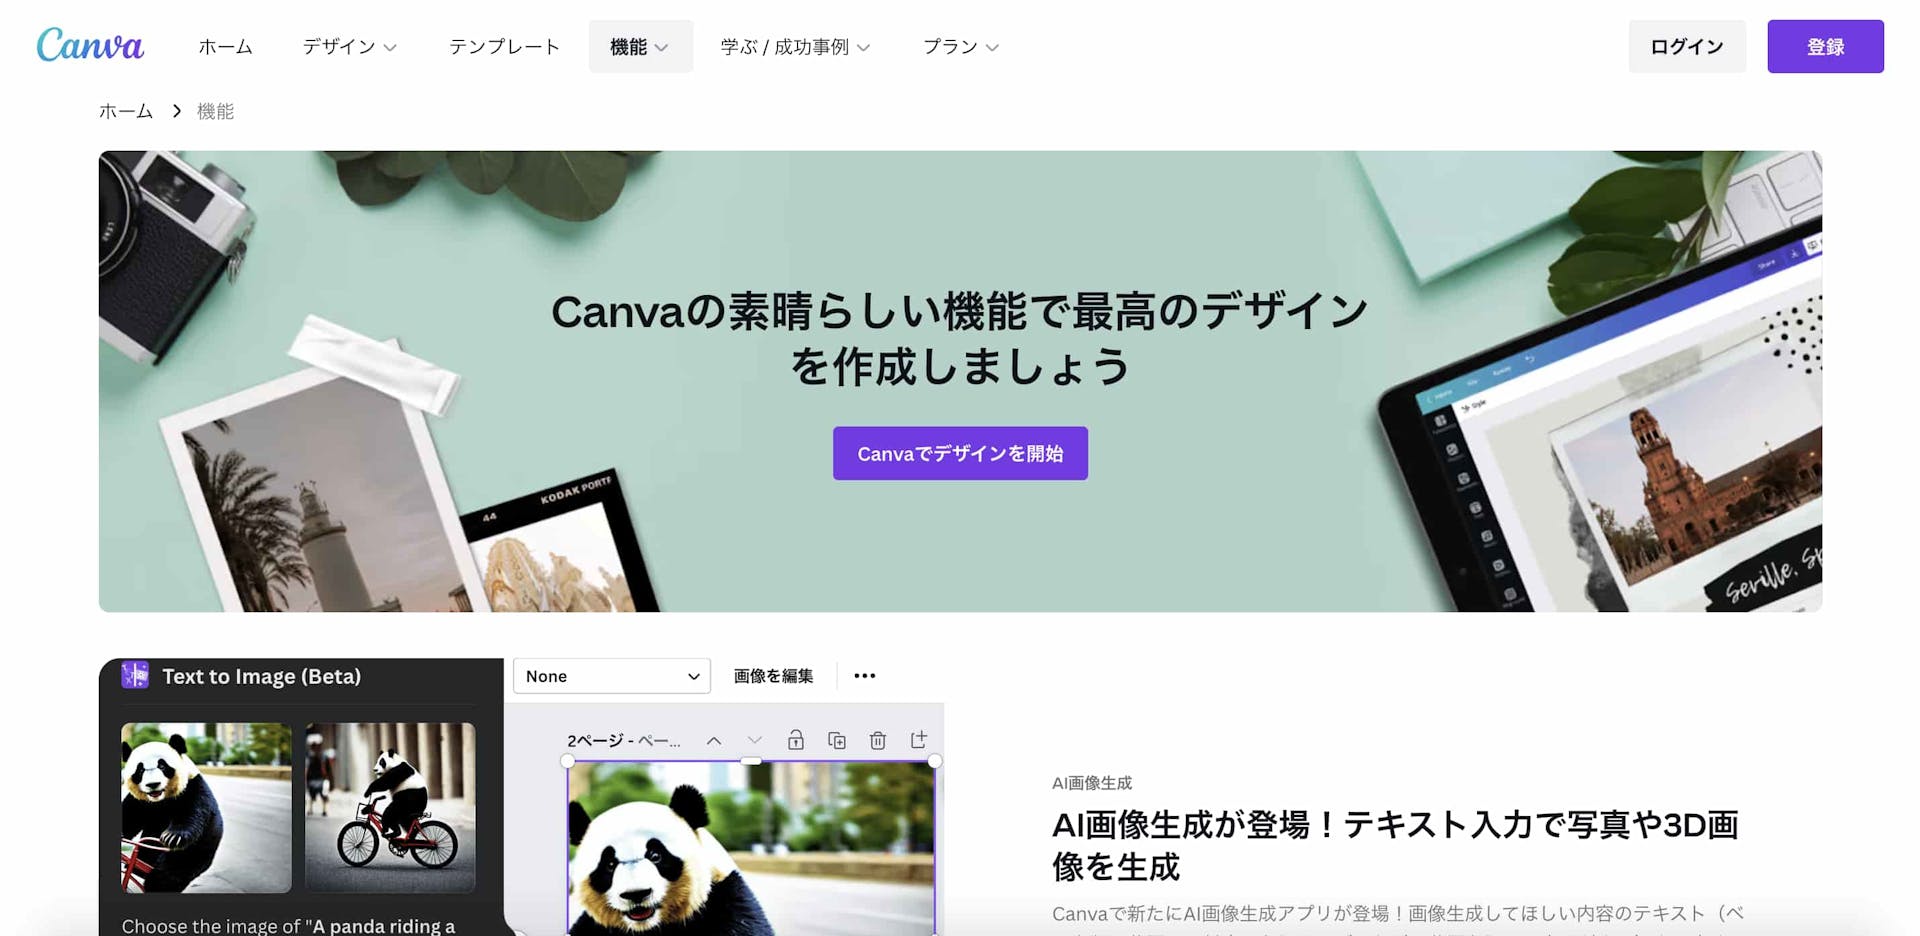 Canvaの公式ホームページ